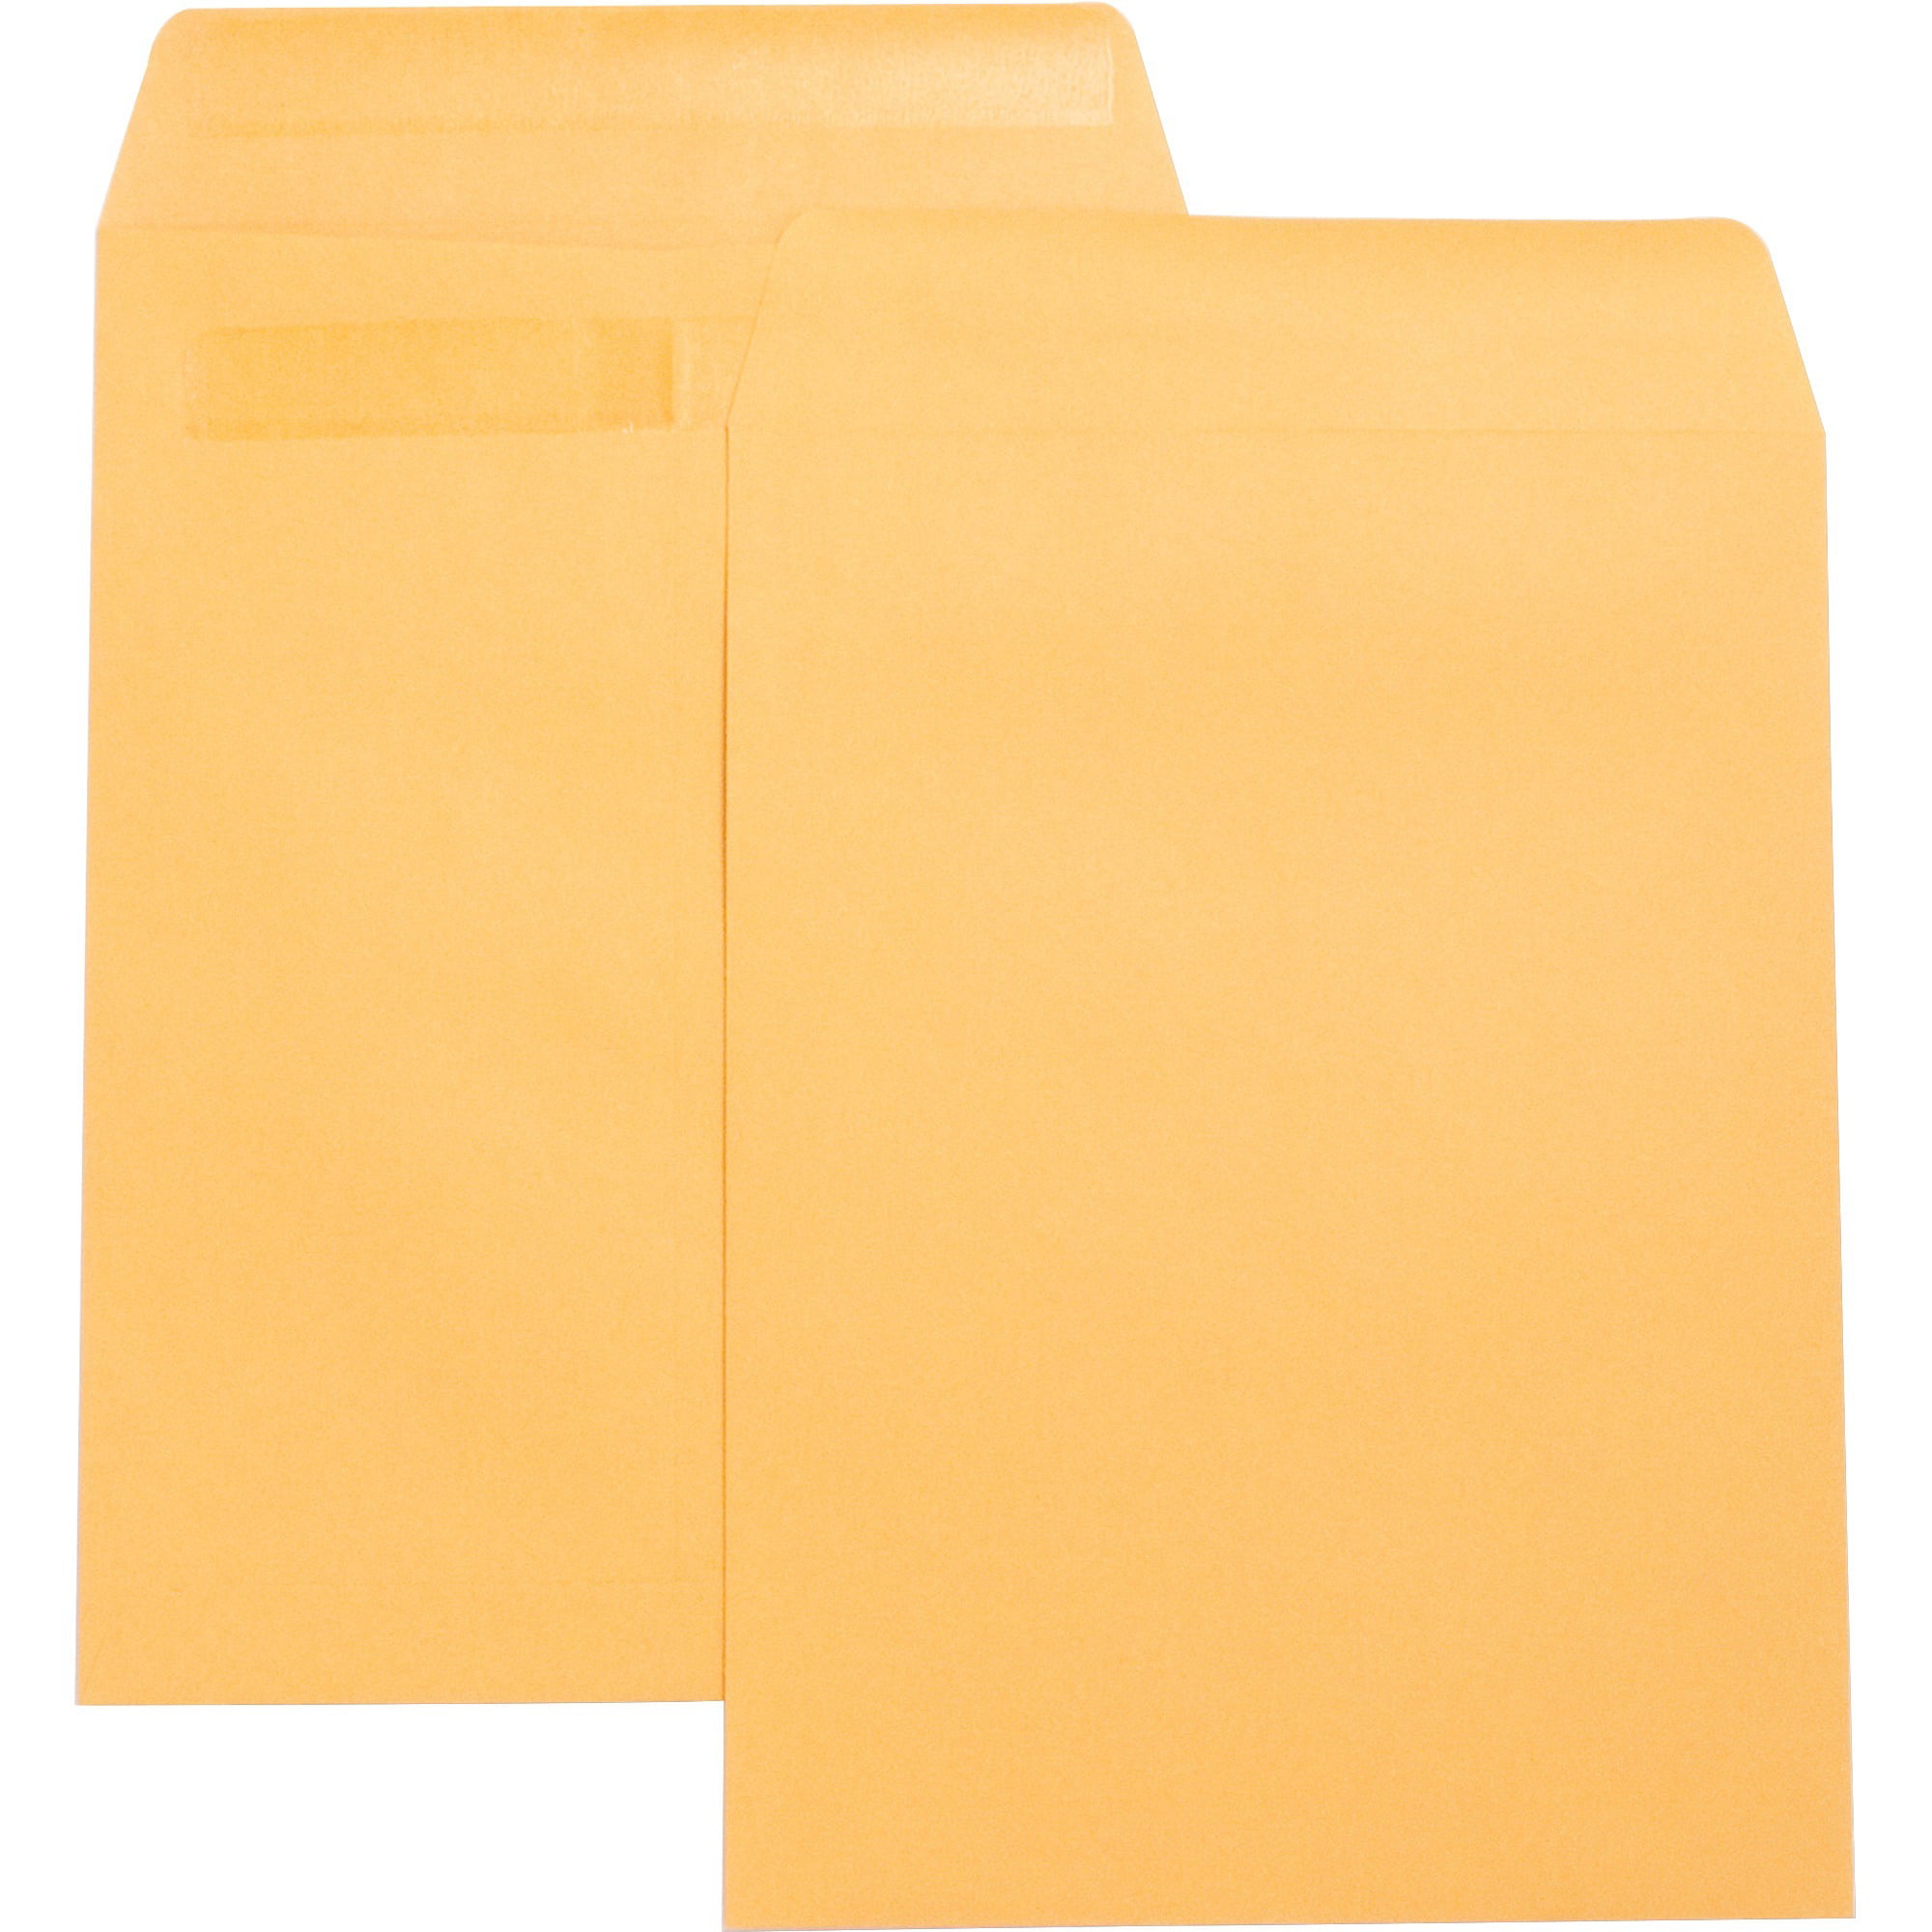 Press/Seal White Catalog Envelopes - 10 Pack 28lb 9 W x 12 L 